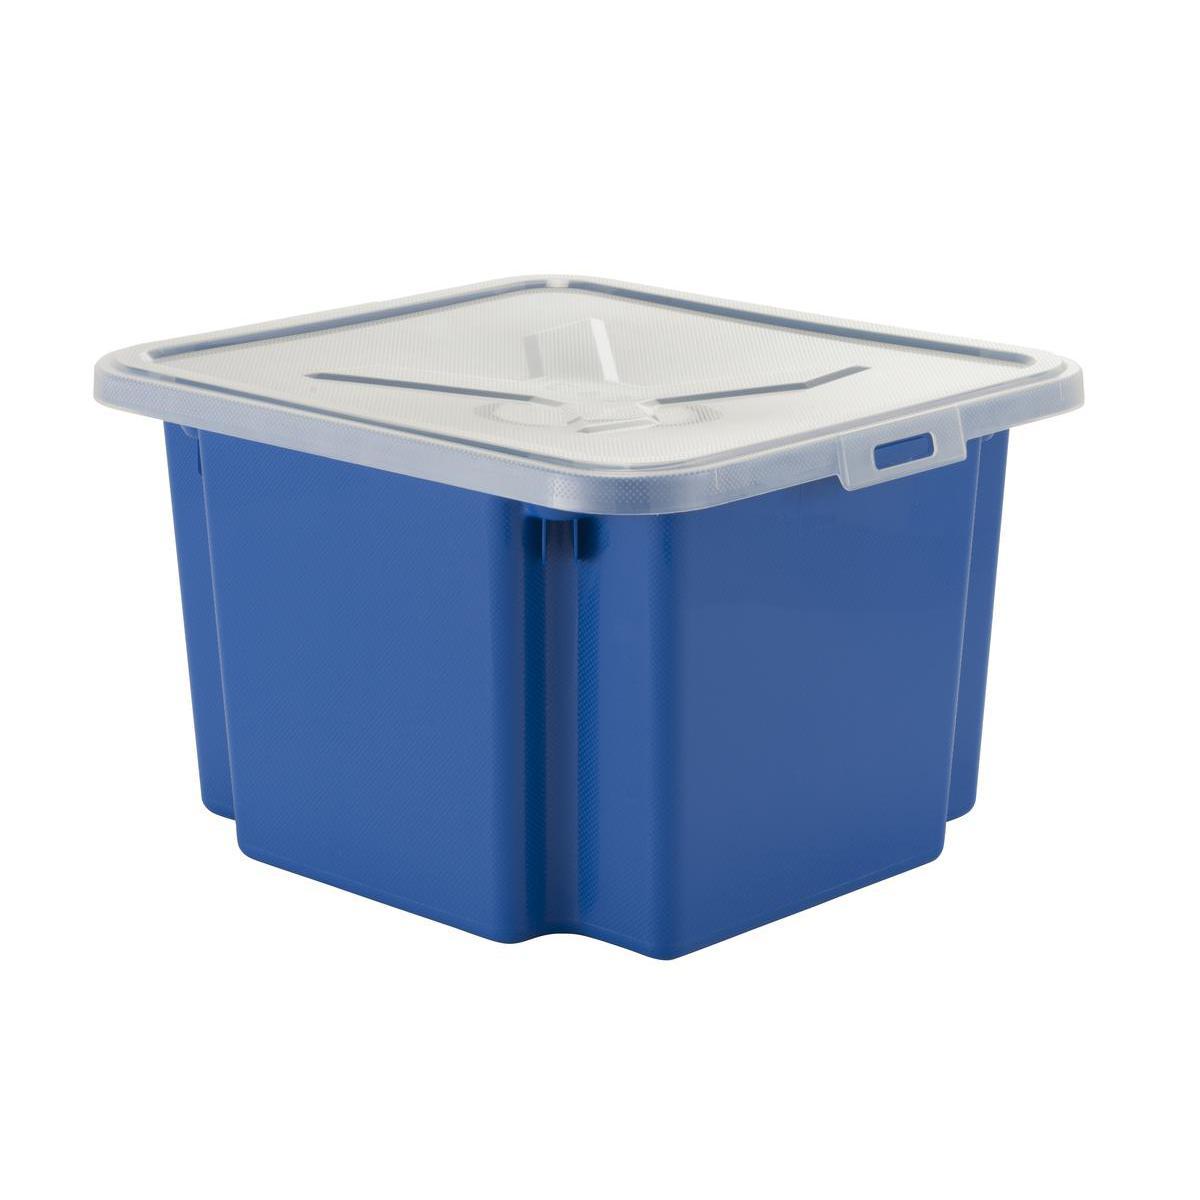 Boîte de rangement - Plastique - 39 x 34,1 x H 23,3 cm - Bleu